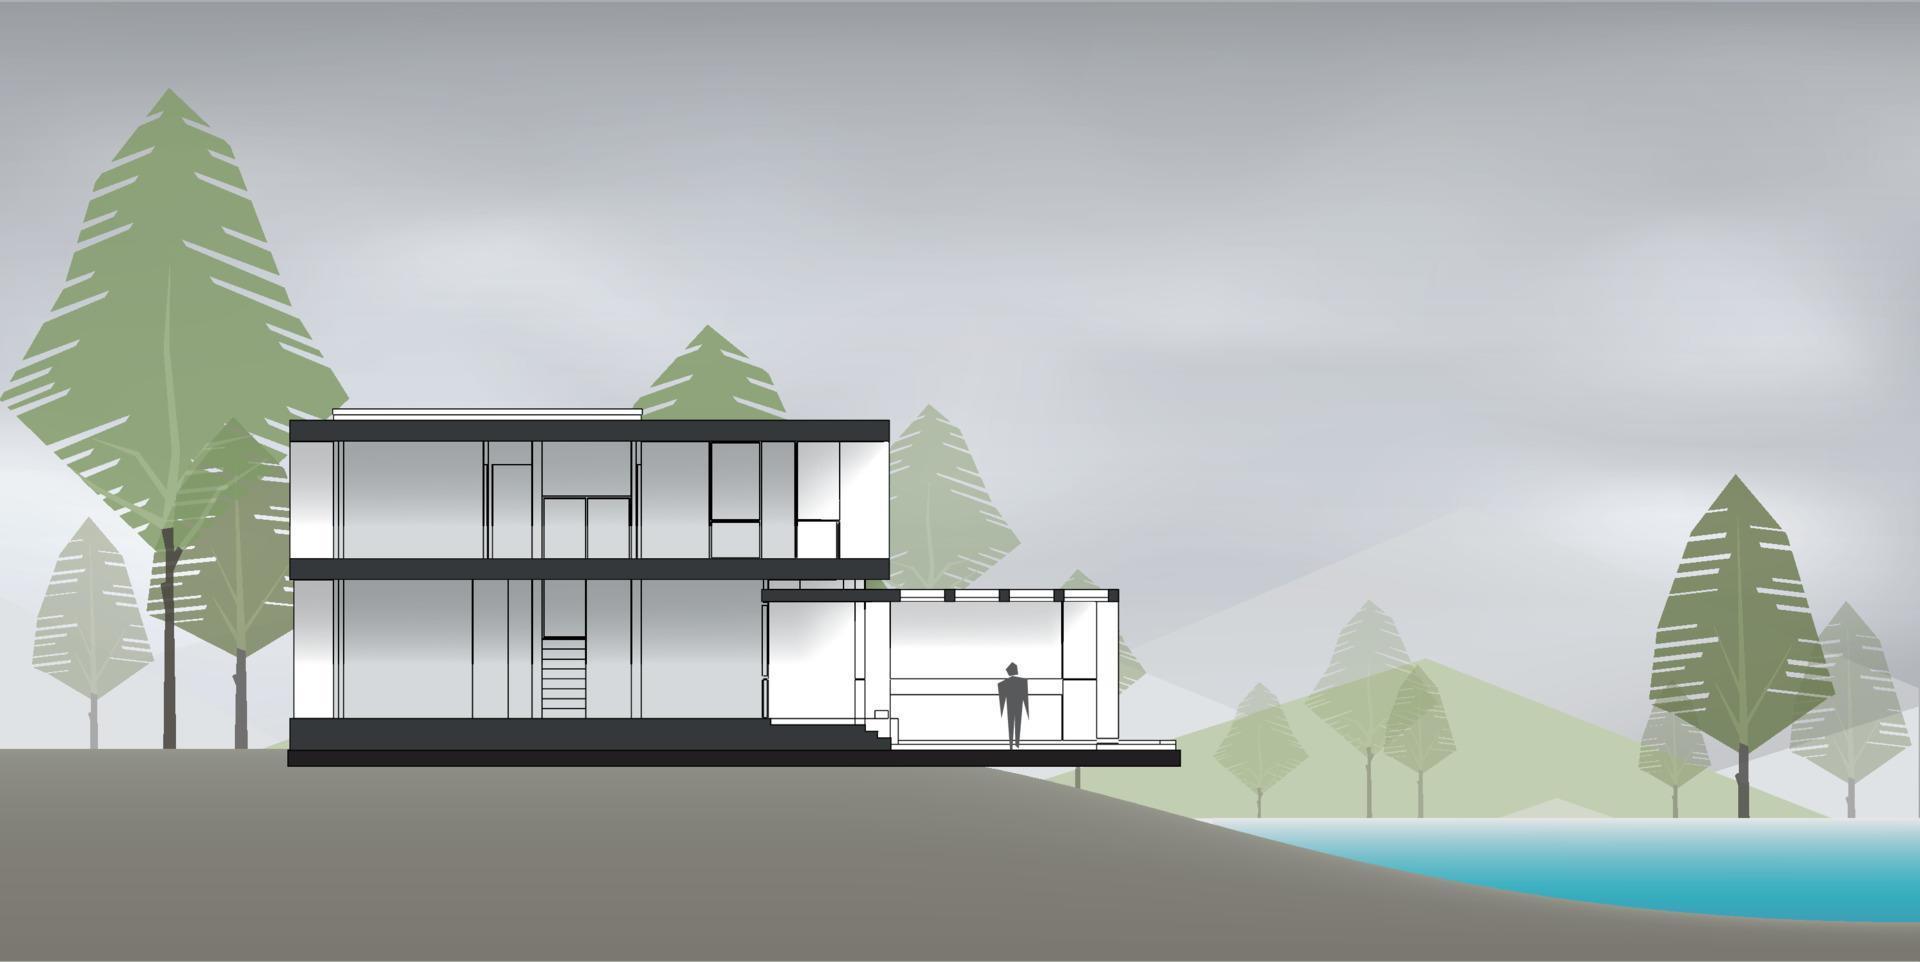 Sección de casa moderna con lago y fondo verde área natural. vector. vector